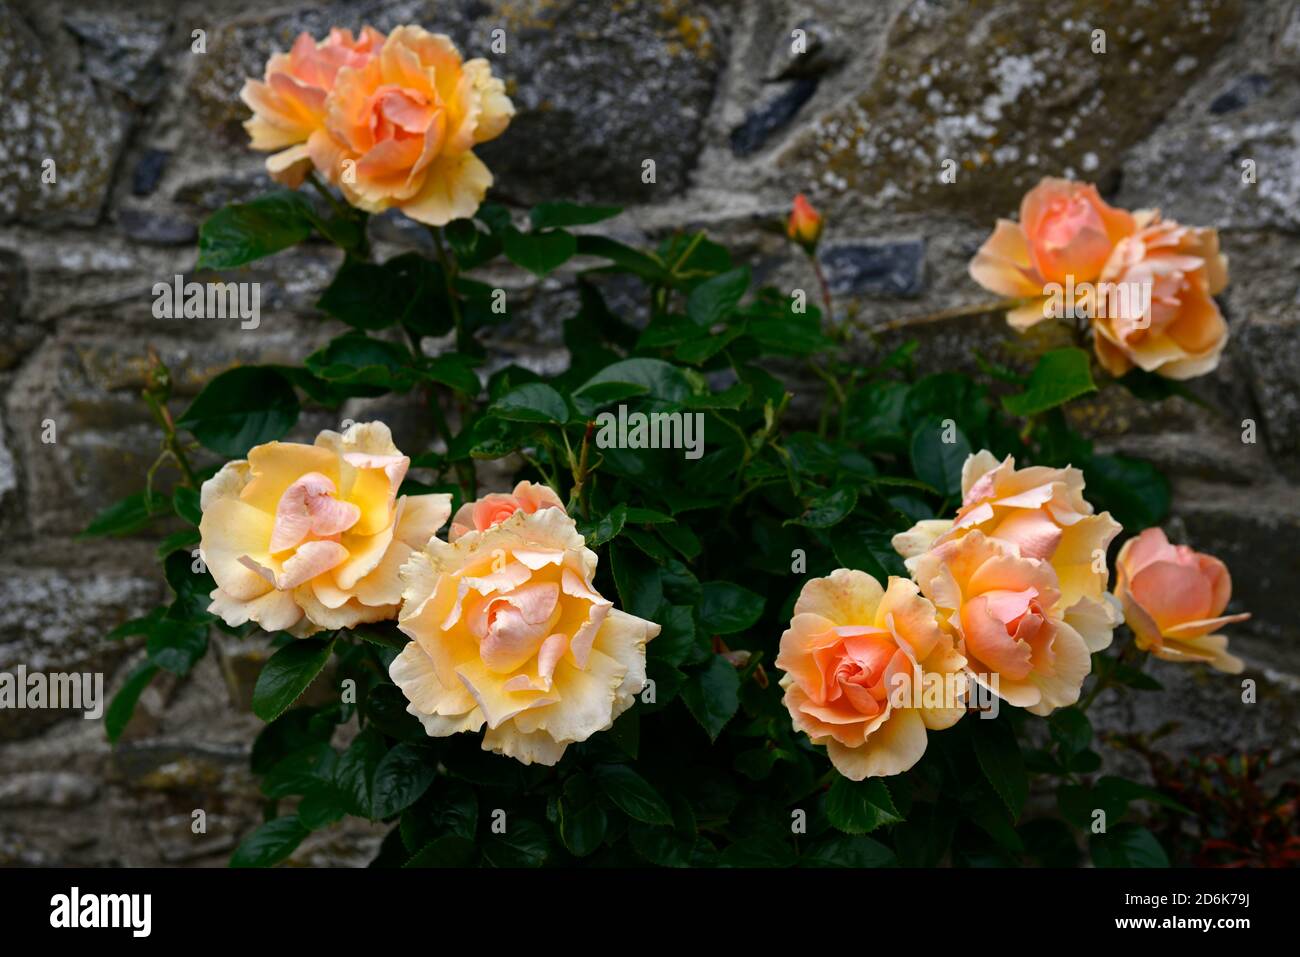 Rosa Hansestadt Rostock,Tan04603,rose Hansestadt Rostock,apricot flowers,apricot roses,Floribunda ,Cluster-flowered bush roses ,garden,RM Floral Stock Photo